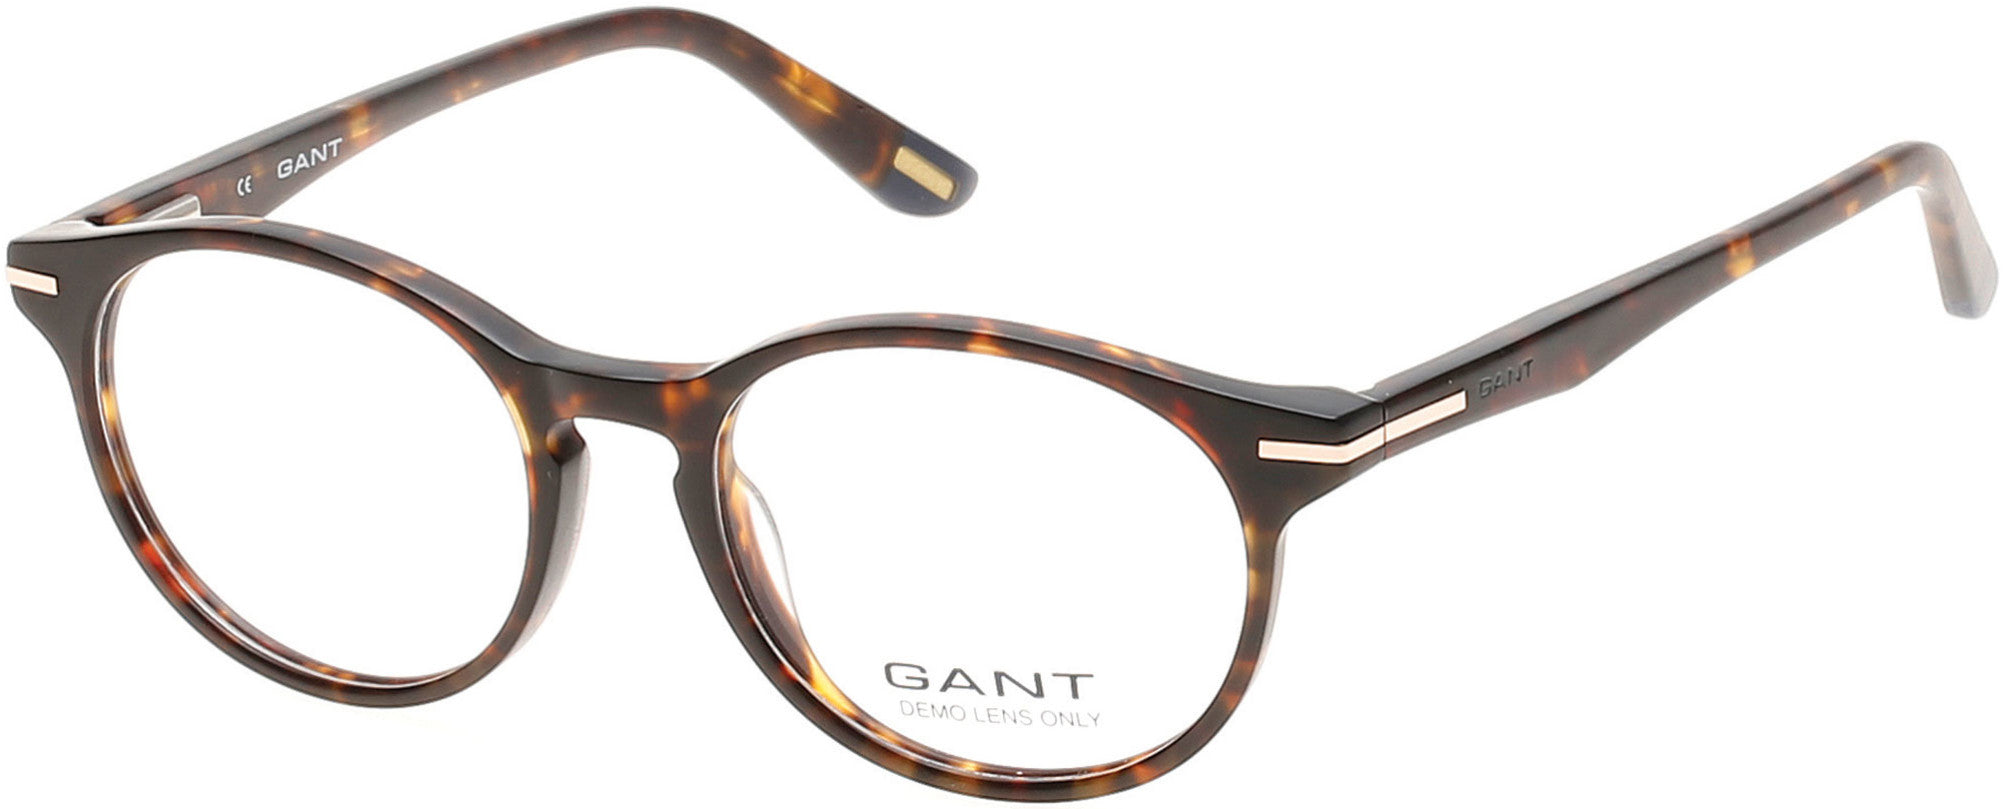 Gant GA3060 Round Eyeglasses 052-052 - Dark Havana